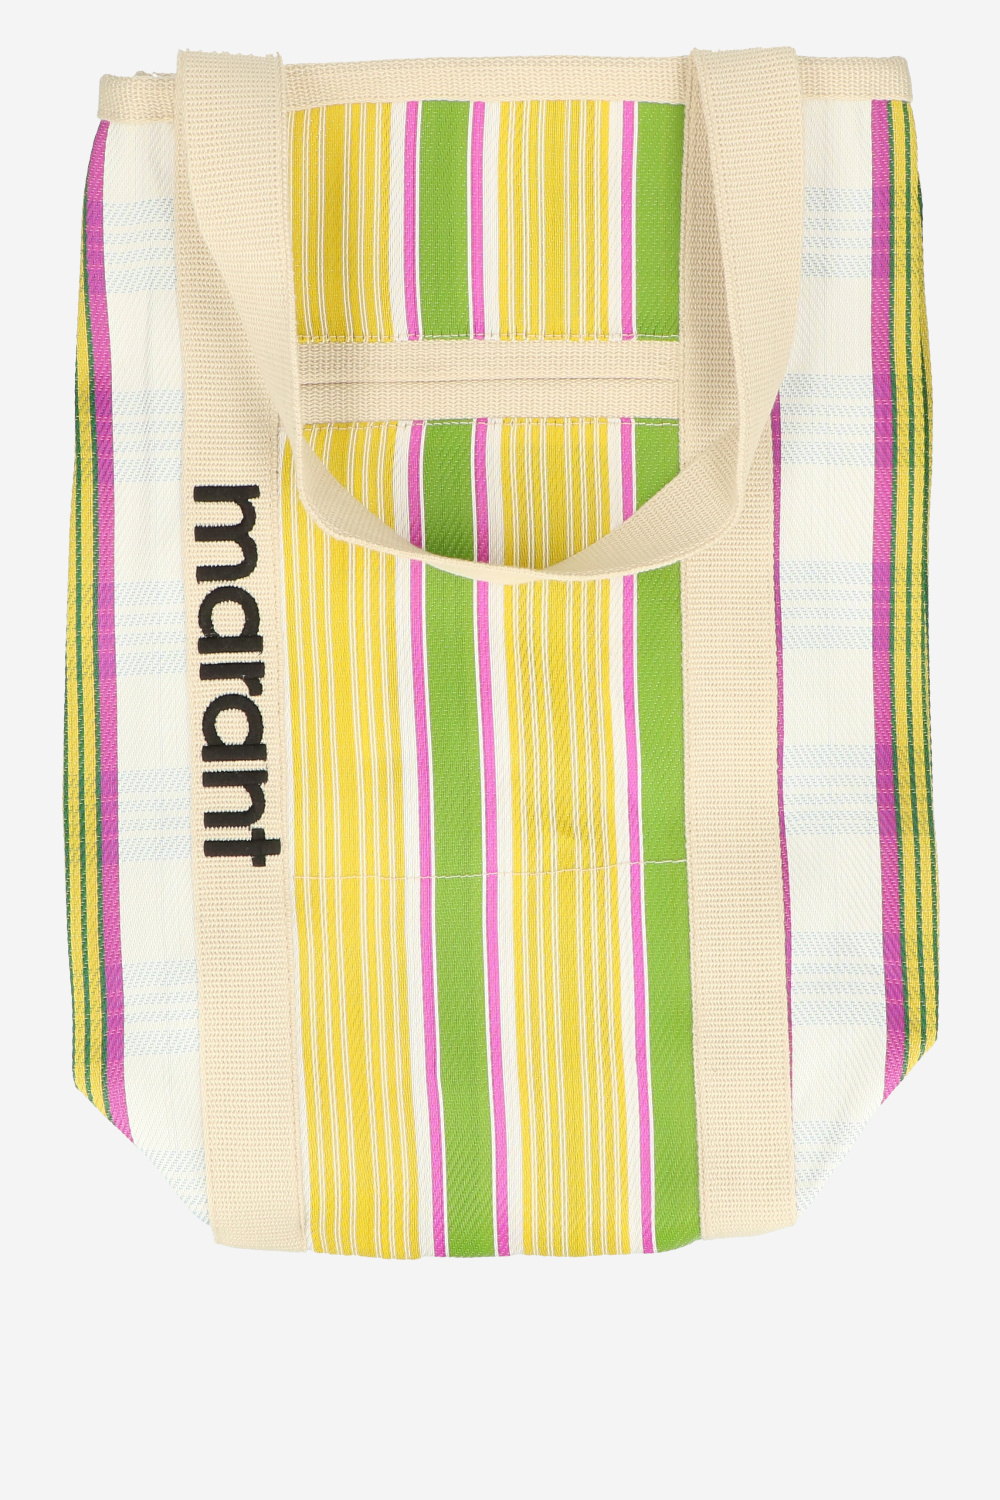 Isabel Marant Shoulder bag Bright colors